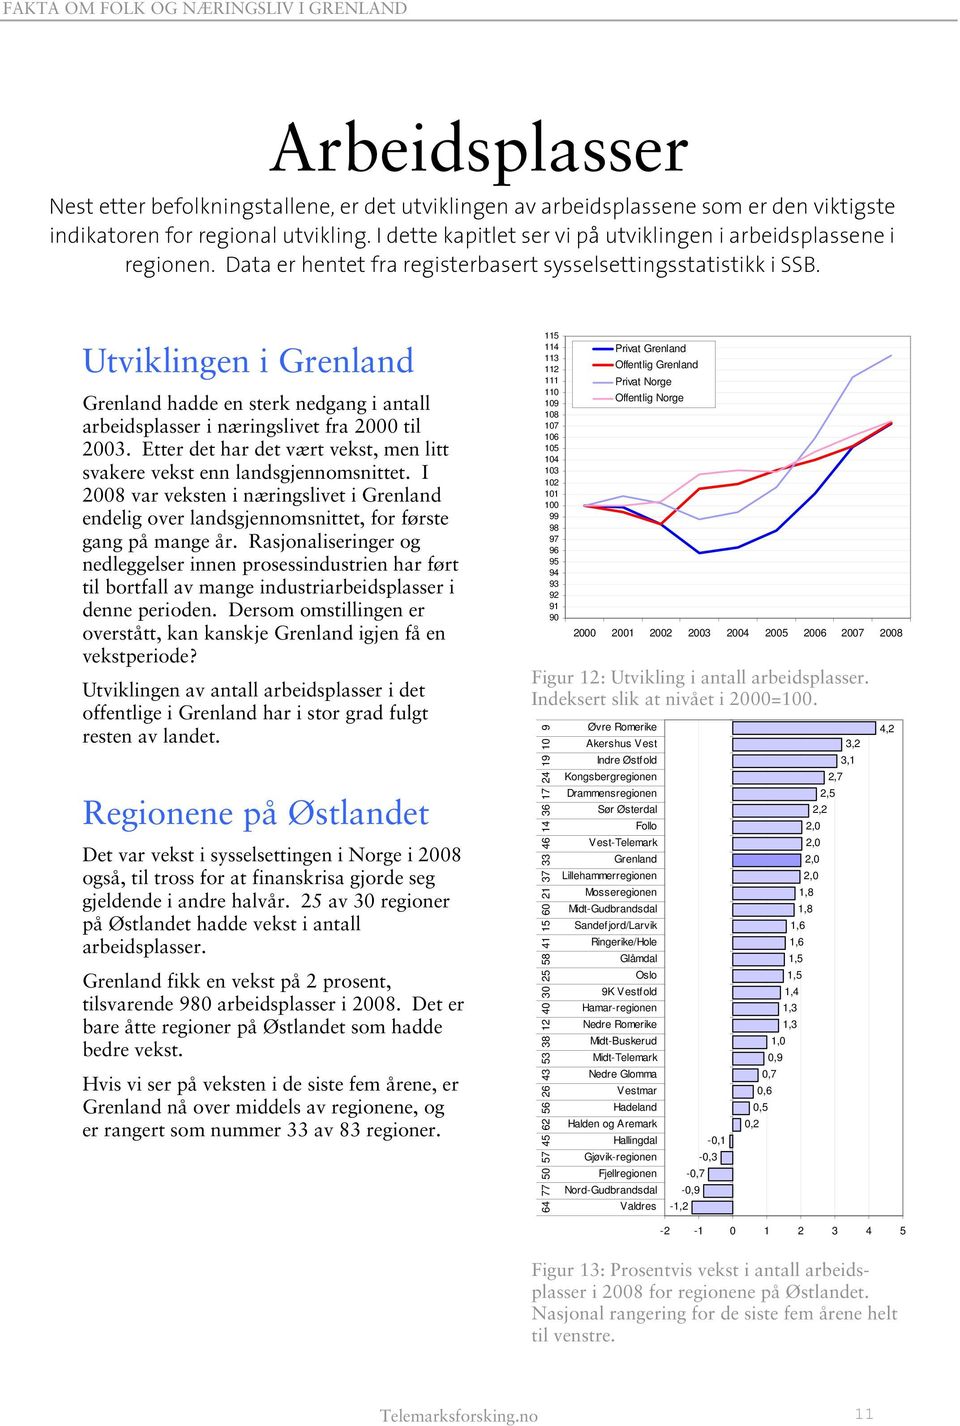 Utviklingen i hadde en sterk nedgang i antall arbeidsplasser i næringslivet fra 2000 til 2003. Etter det har det vært vekst, men litt svakere vekst enn landsgjennomsnittet.